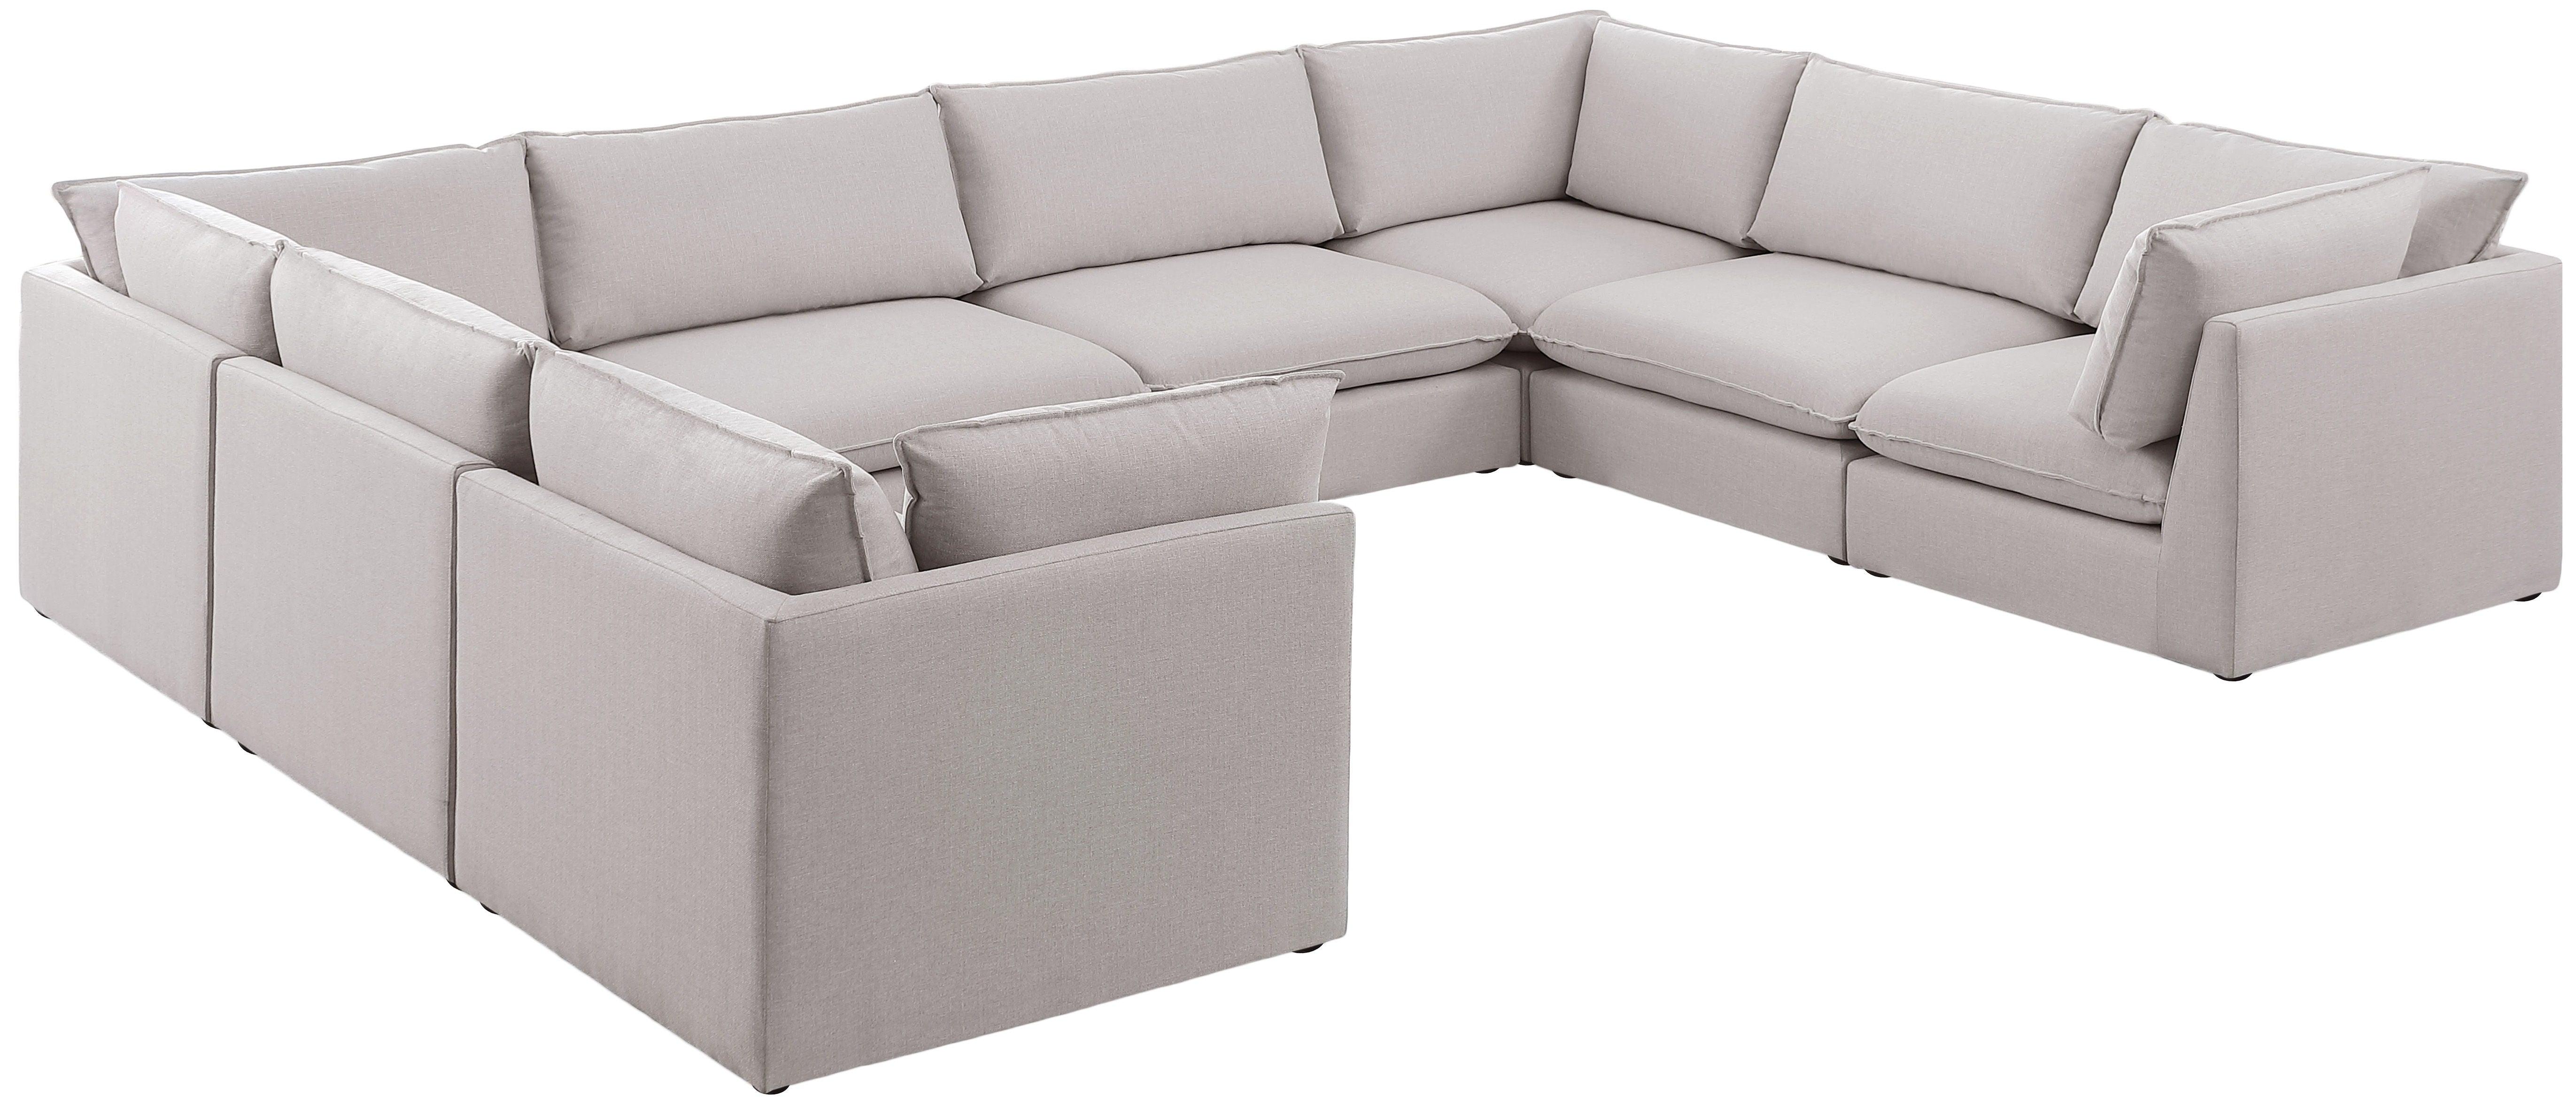 Meridian Furniture - Mackenzie - Modular Sectional 8 Piece - Beige - 5th Avenue Furniture